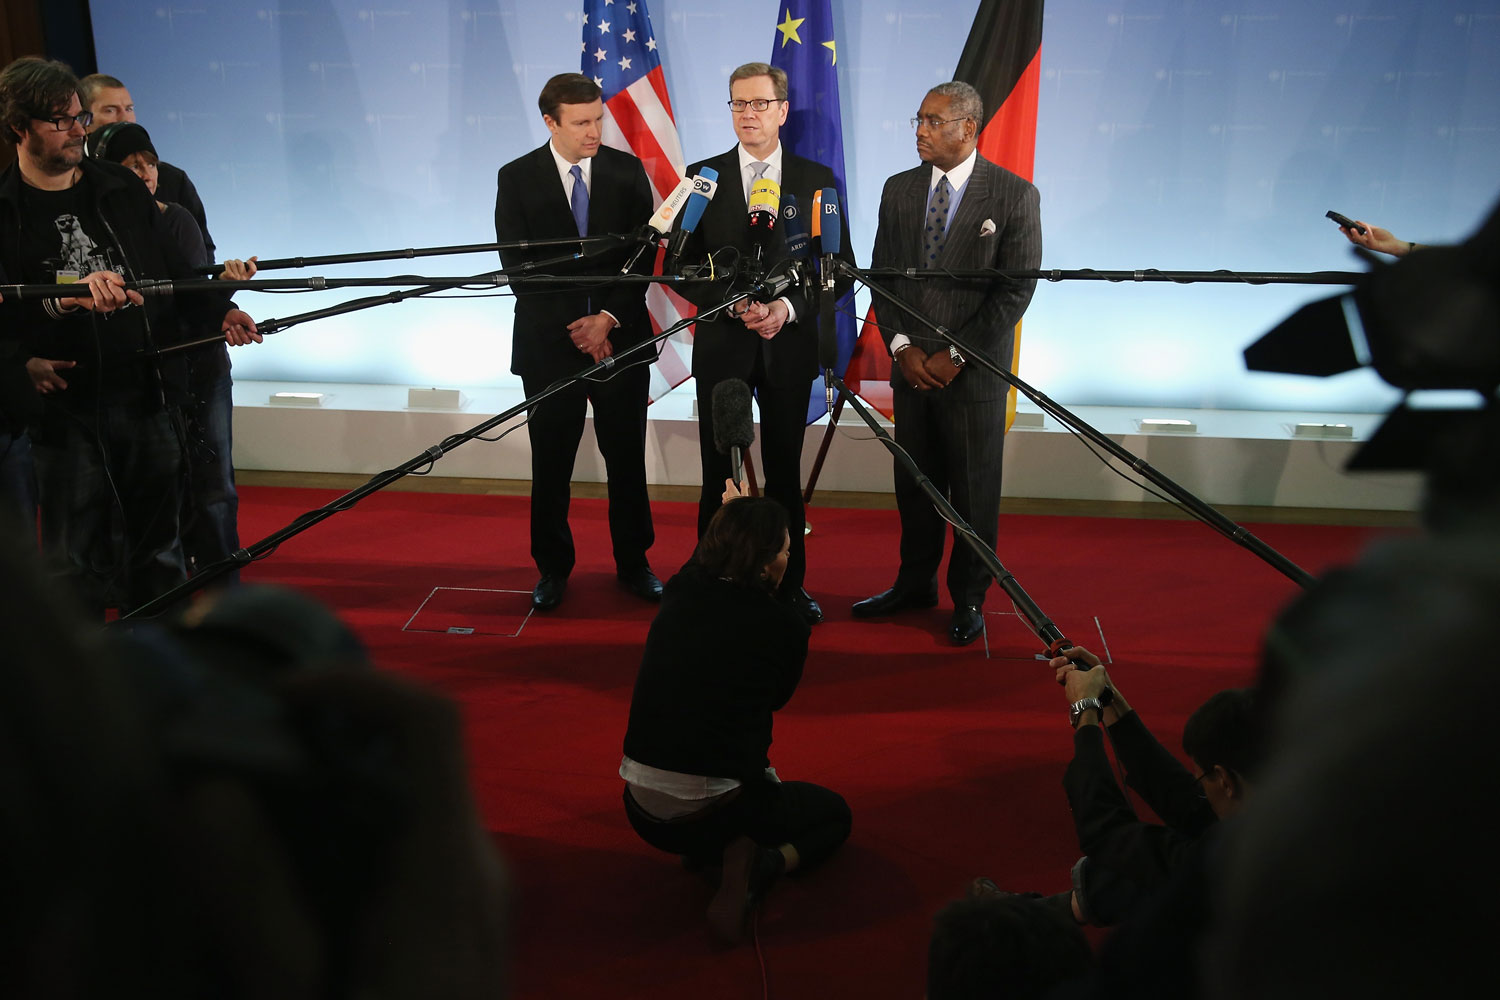 El ministro de Exteriores alemán, Guido Westerwelle, se reúne con congresistas americanos